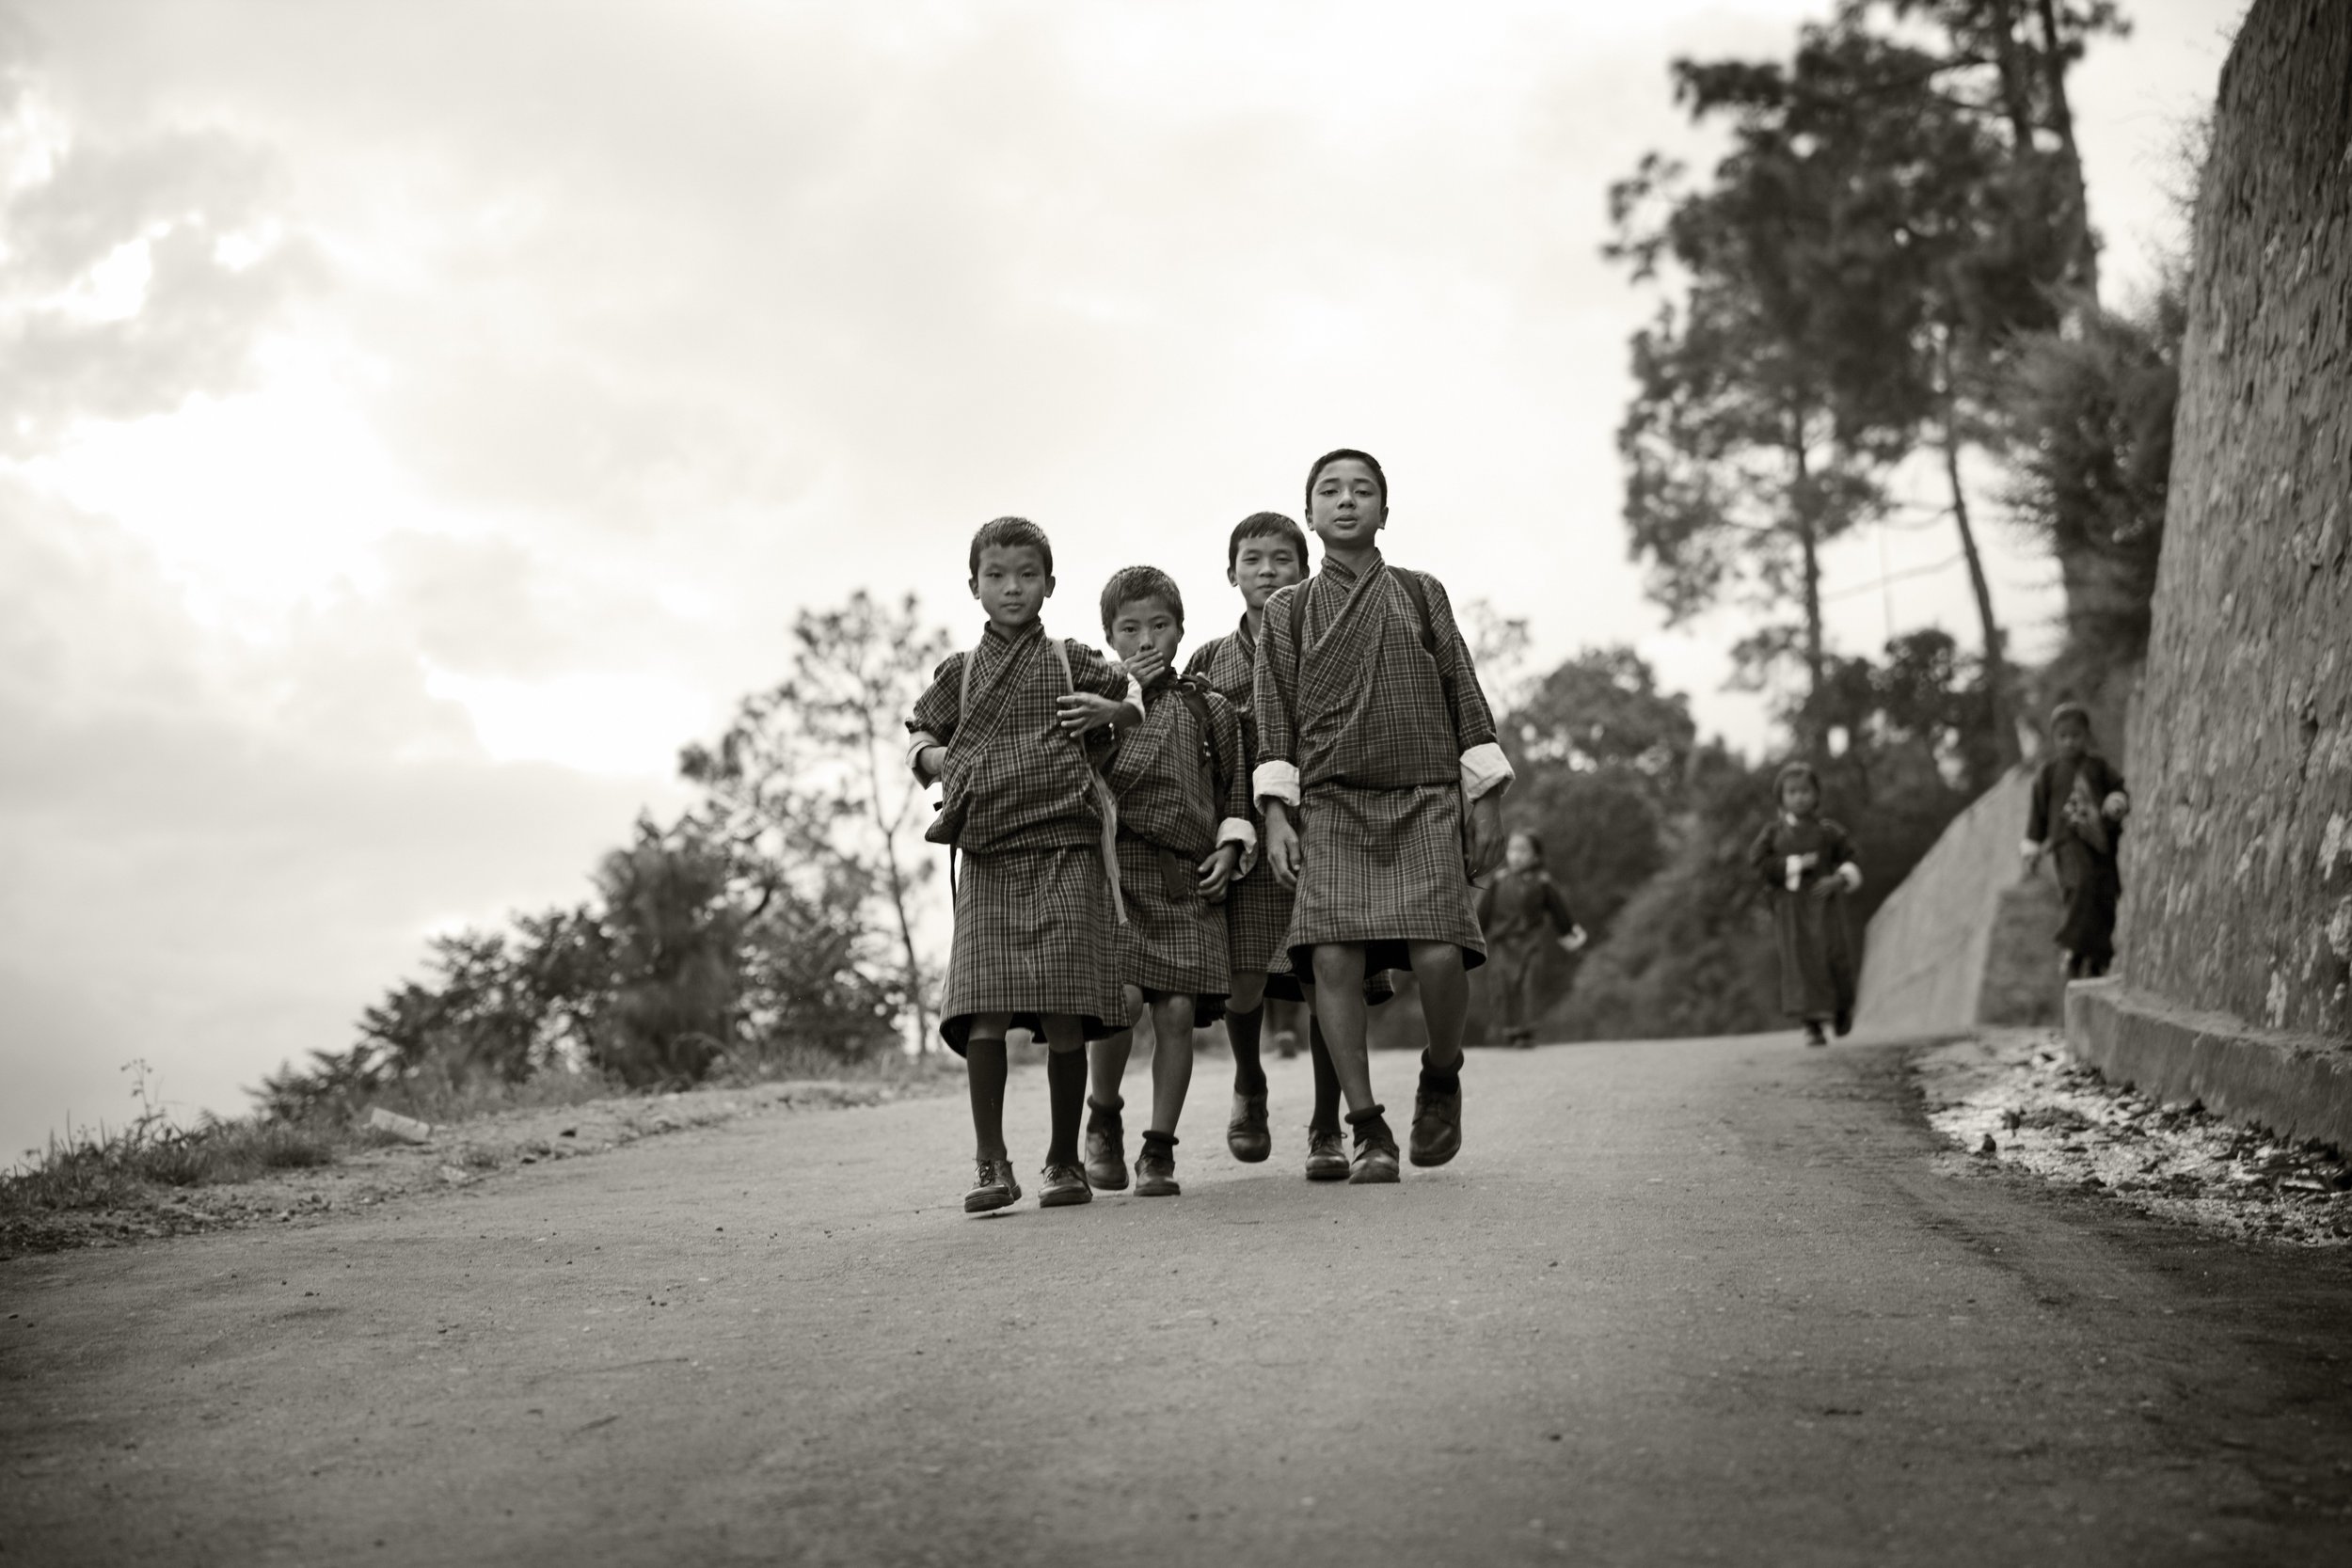 Bhutan_Children_on_way_home_from_school.jpg